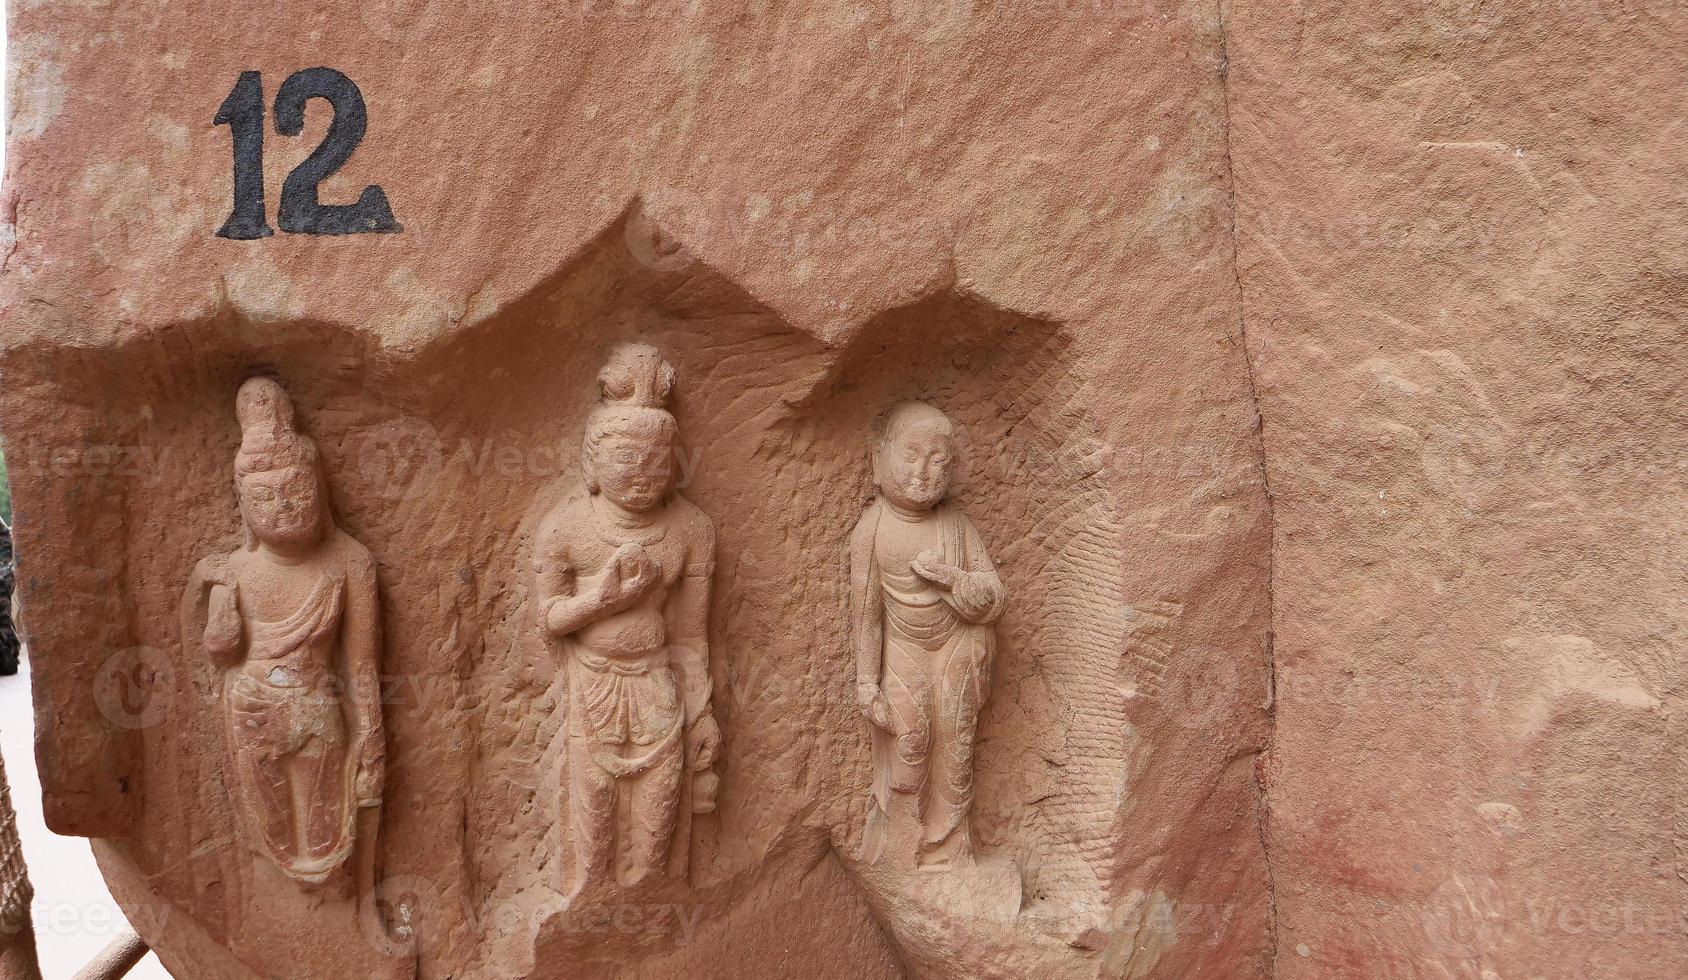 escultura de grutas budistas no agitado templo de Lanzhou Gansu, China foto